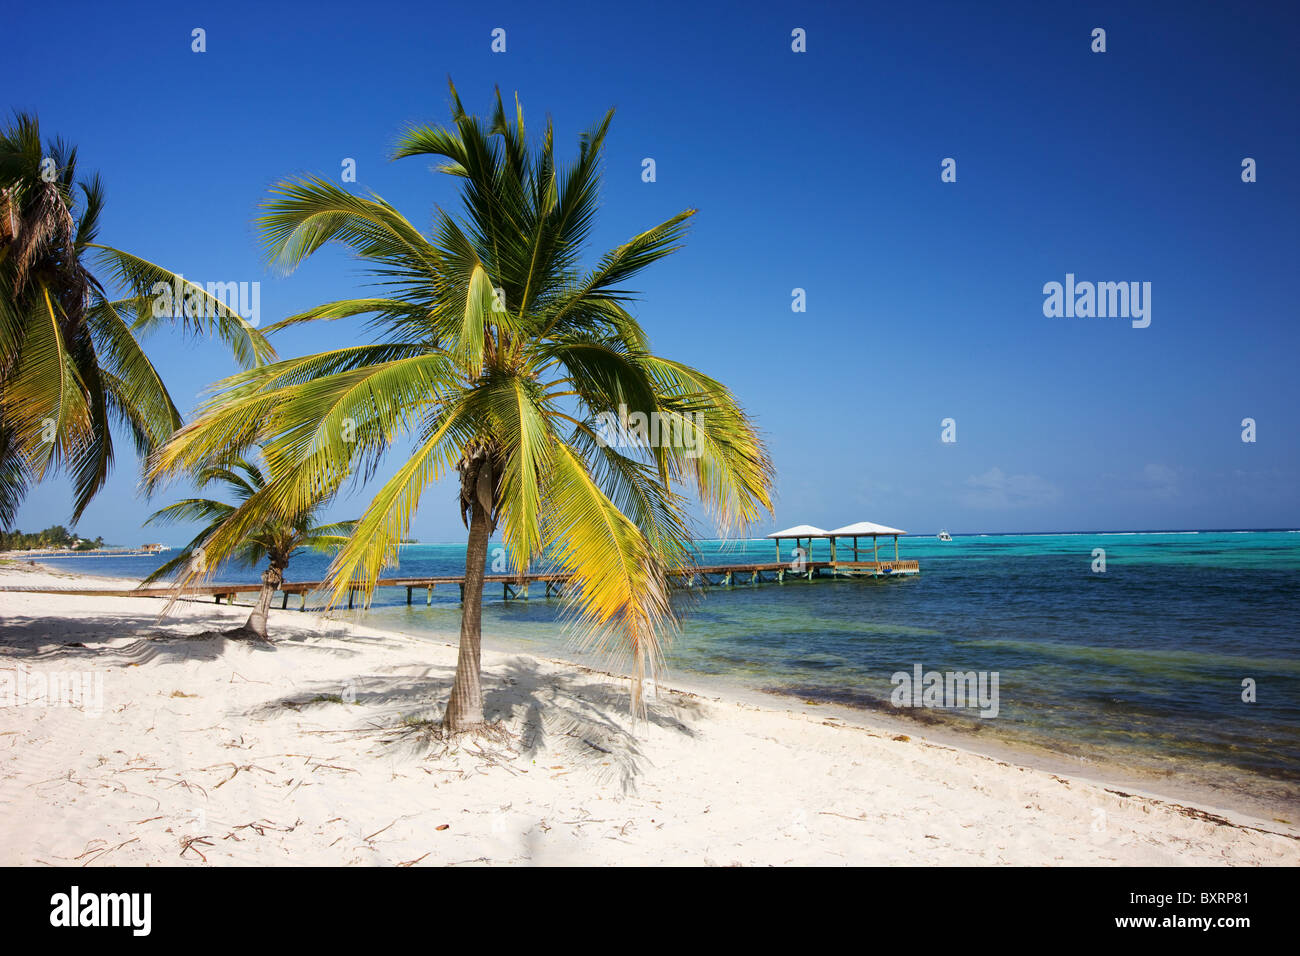 Cayman Islands, Little Cayman, Little Cayman Beach Resort Stock Photo